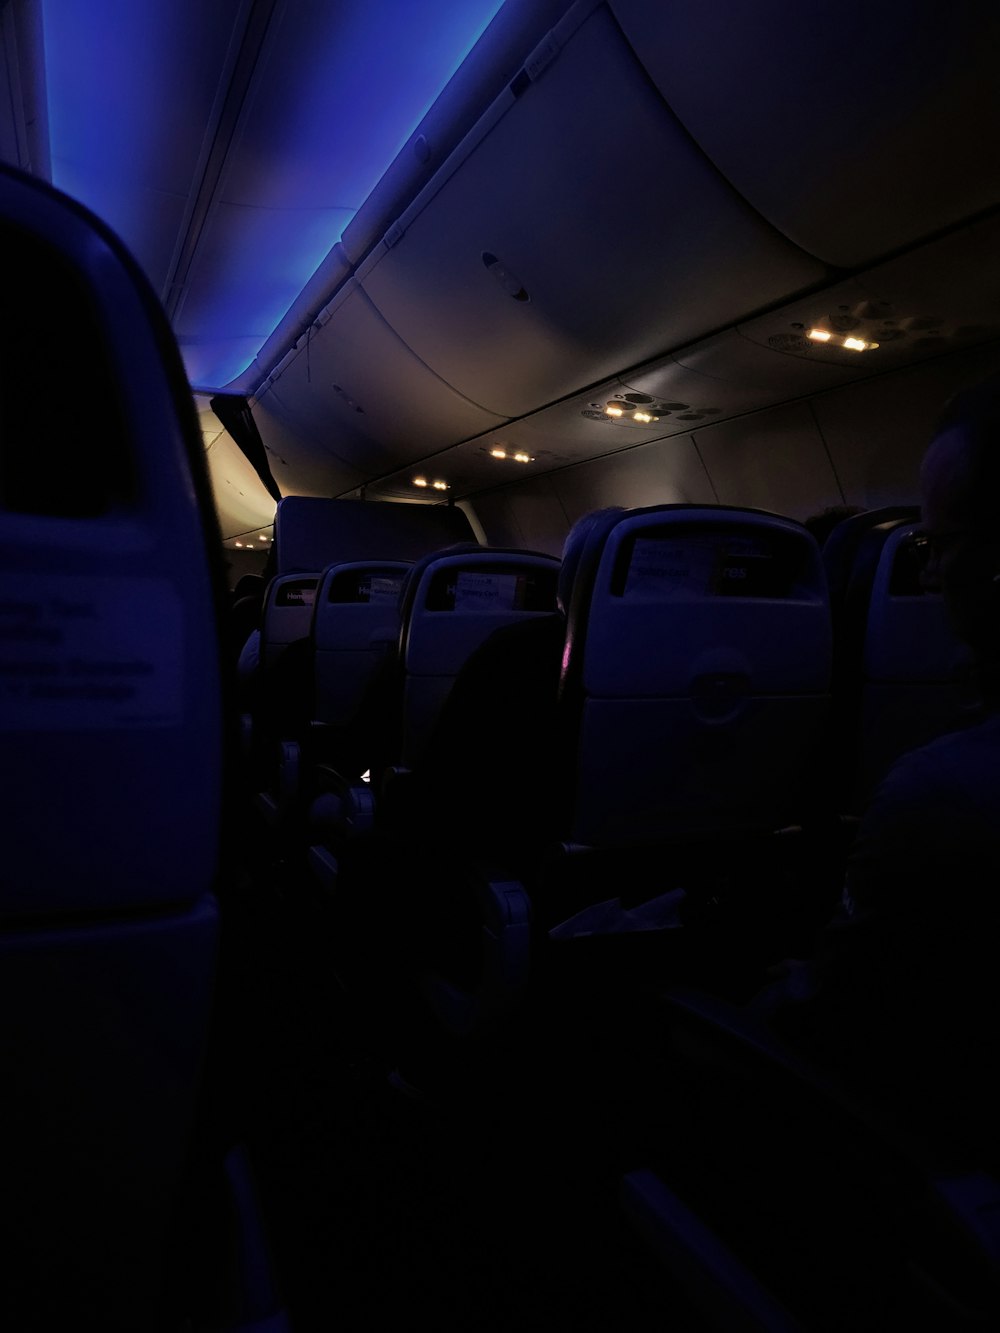 l'interno di un aereo con luci blu